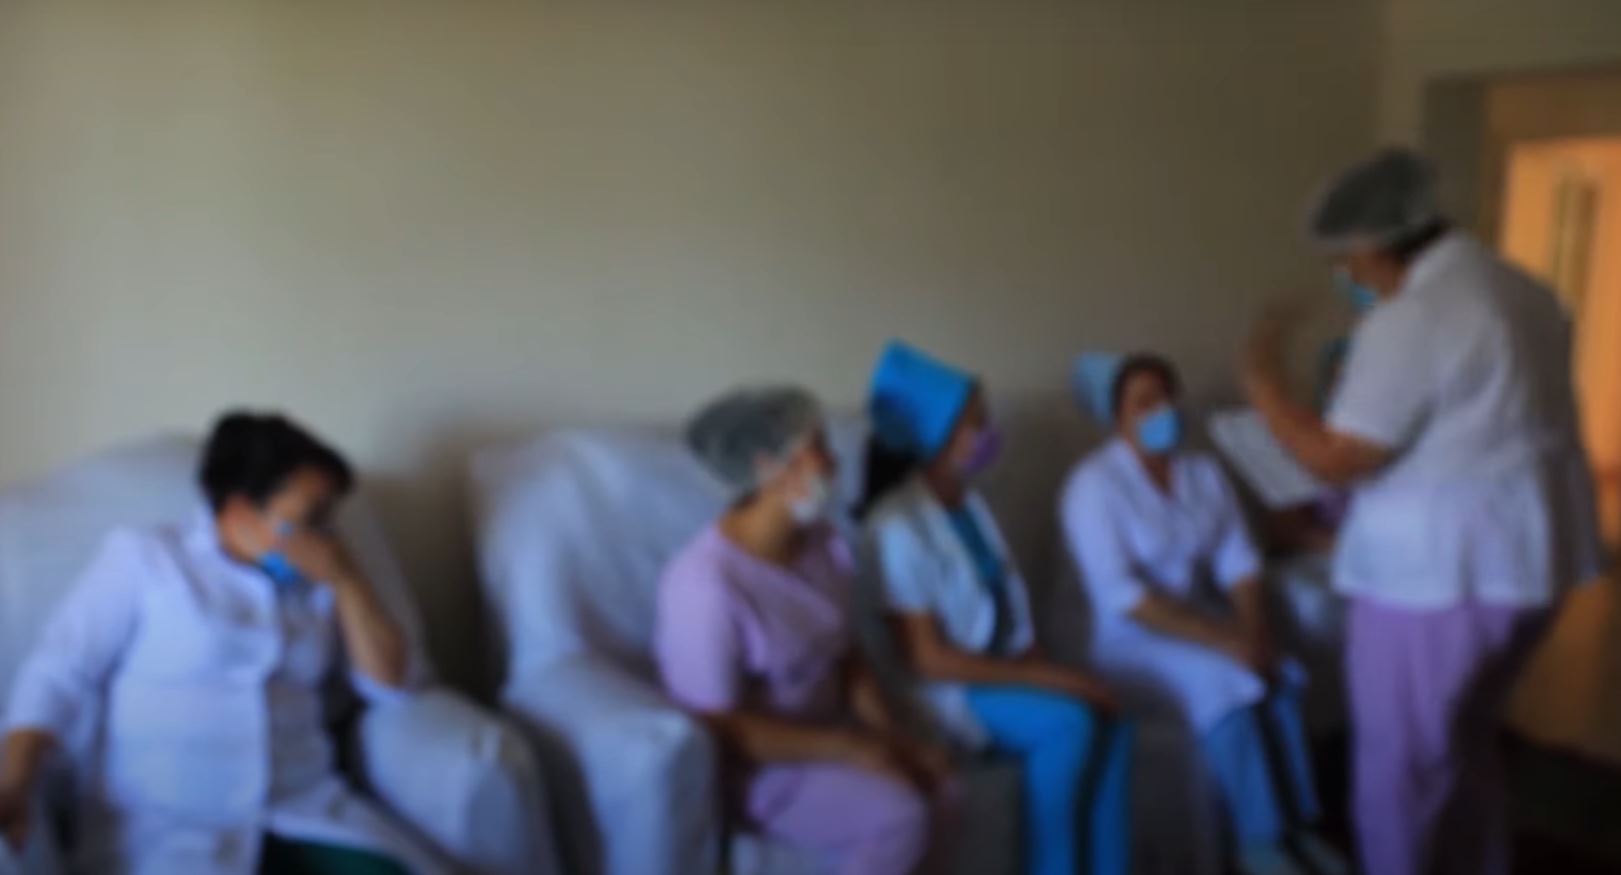 В Джизакской области старшая медсестра оформила кредит на сотрудников больницы более чем на 695 млн сумов